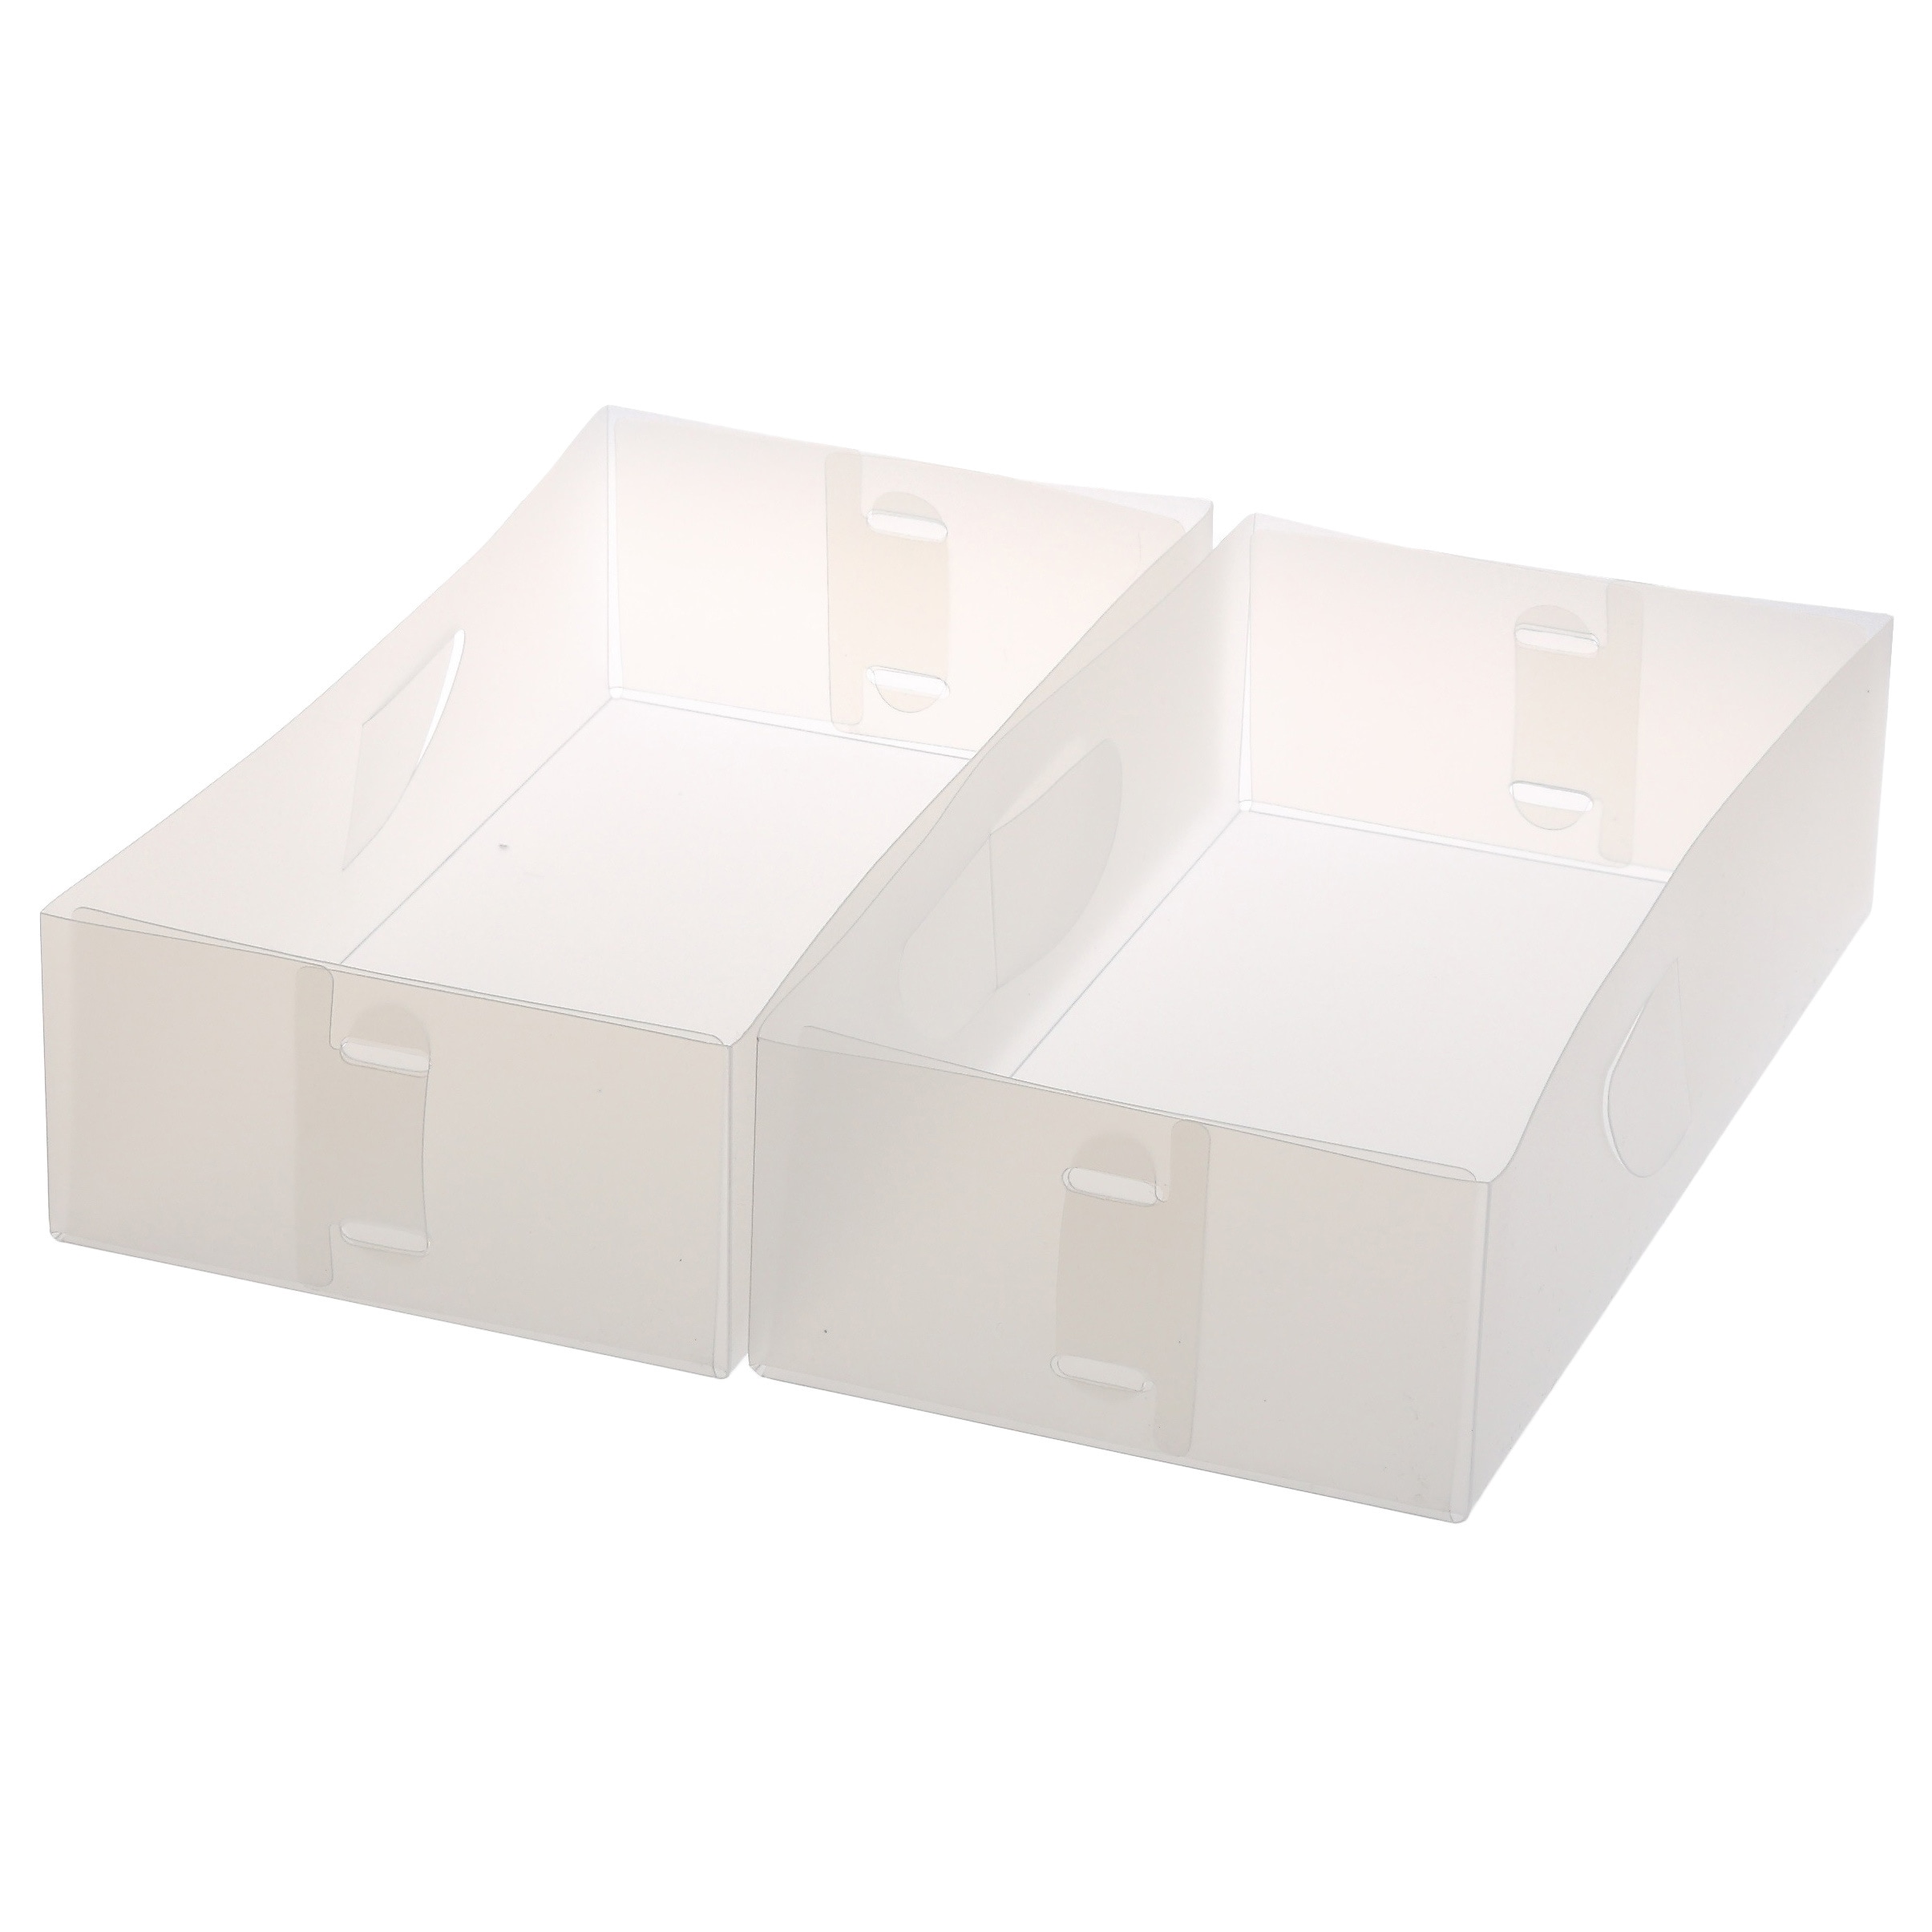 Shop Ybm Home Closet Dresser Drawer Divider Storage Foldable